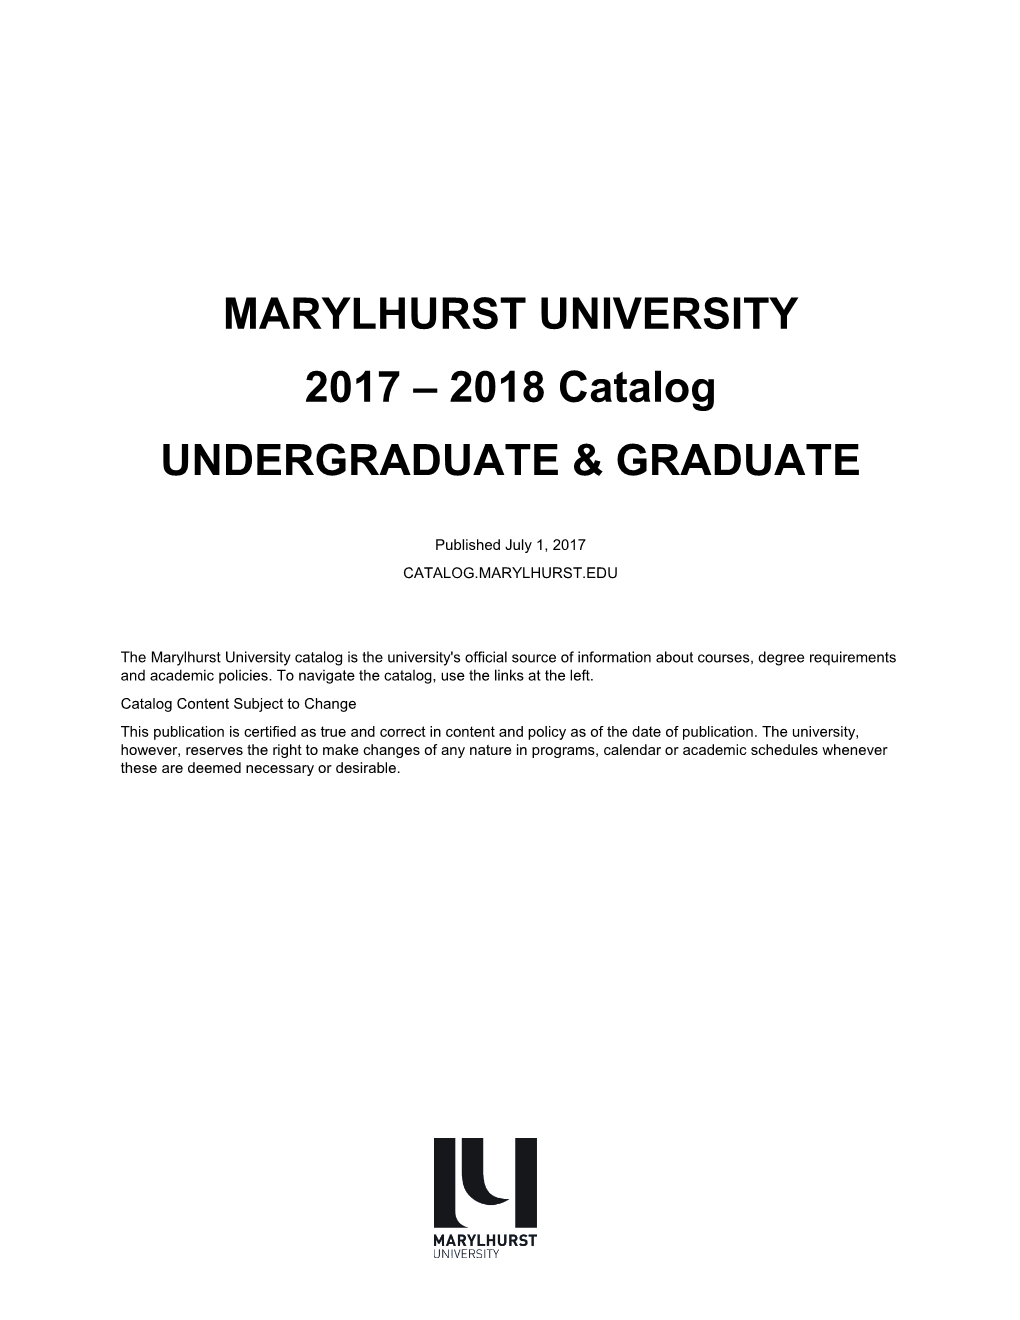 2017-18 Marylhurst University Catalog